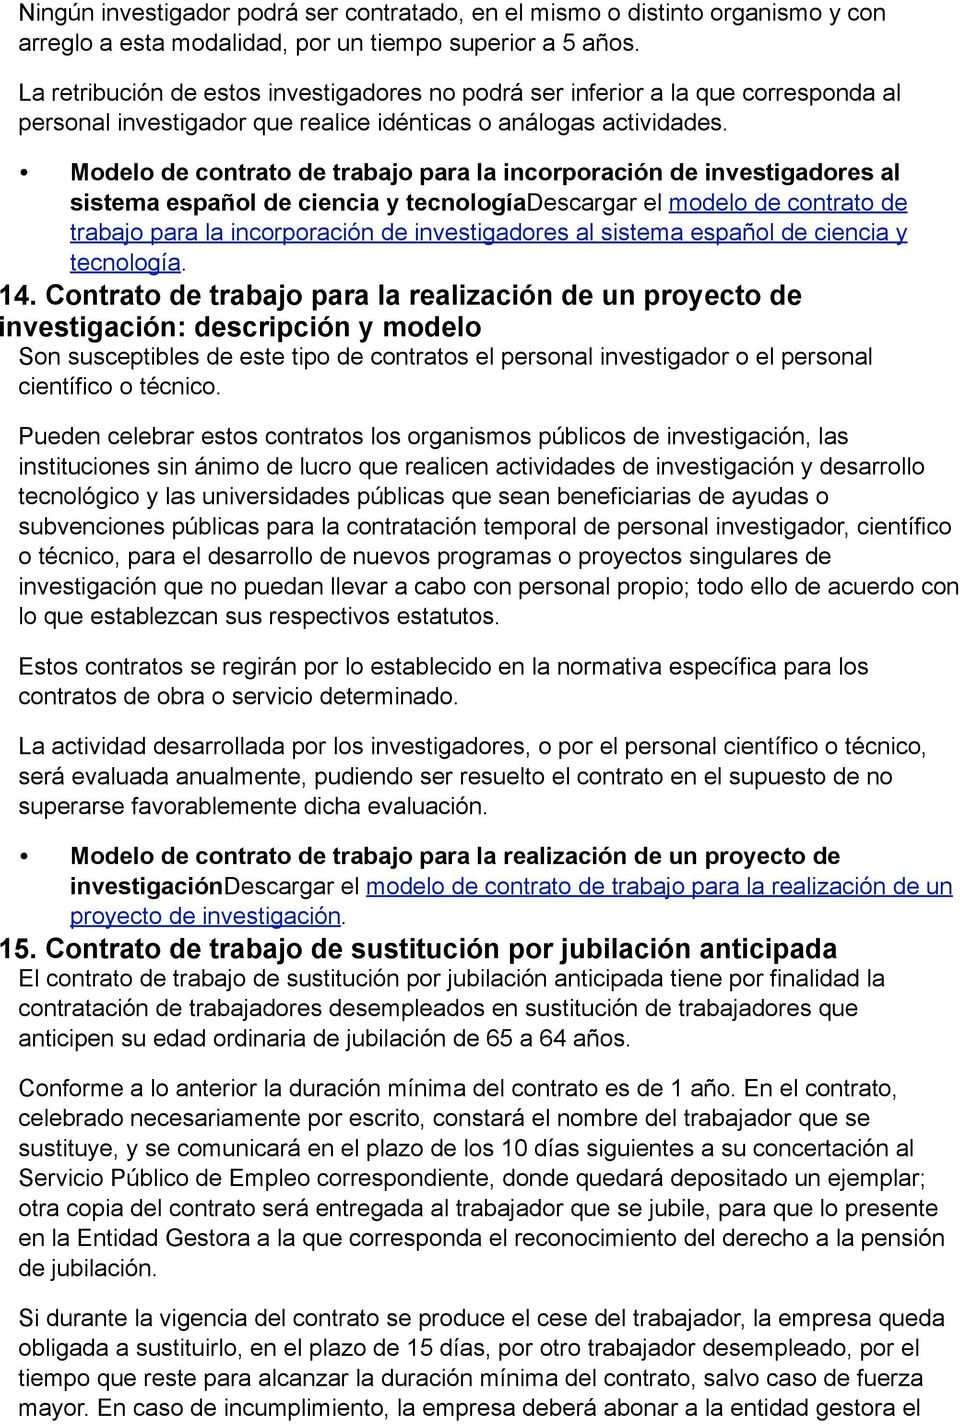 Modelo de contrato de trabajo para la incorporación de investigadores al sistema español de ciencia y tecnologíadescargar el modelo de contrato de trabajo para la incorporación de investigadores al